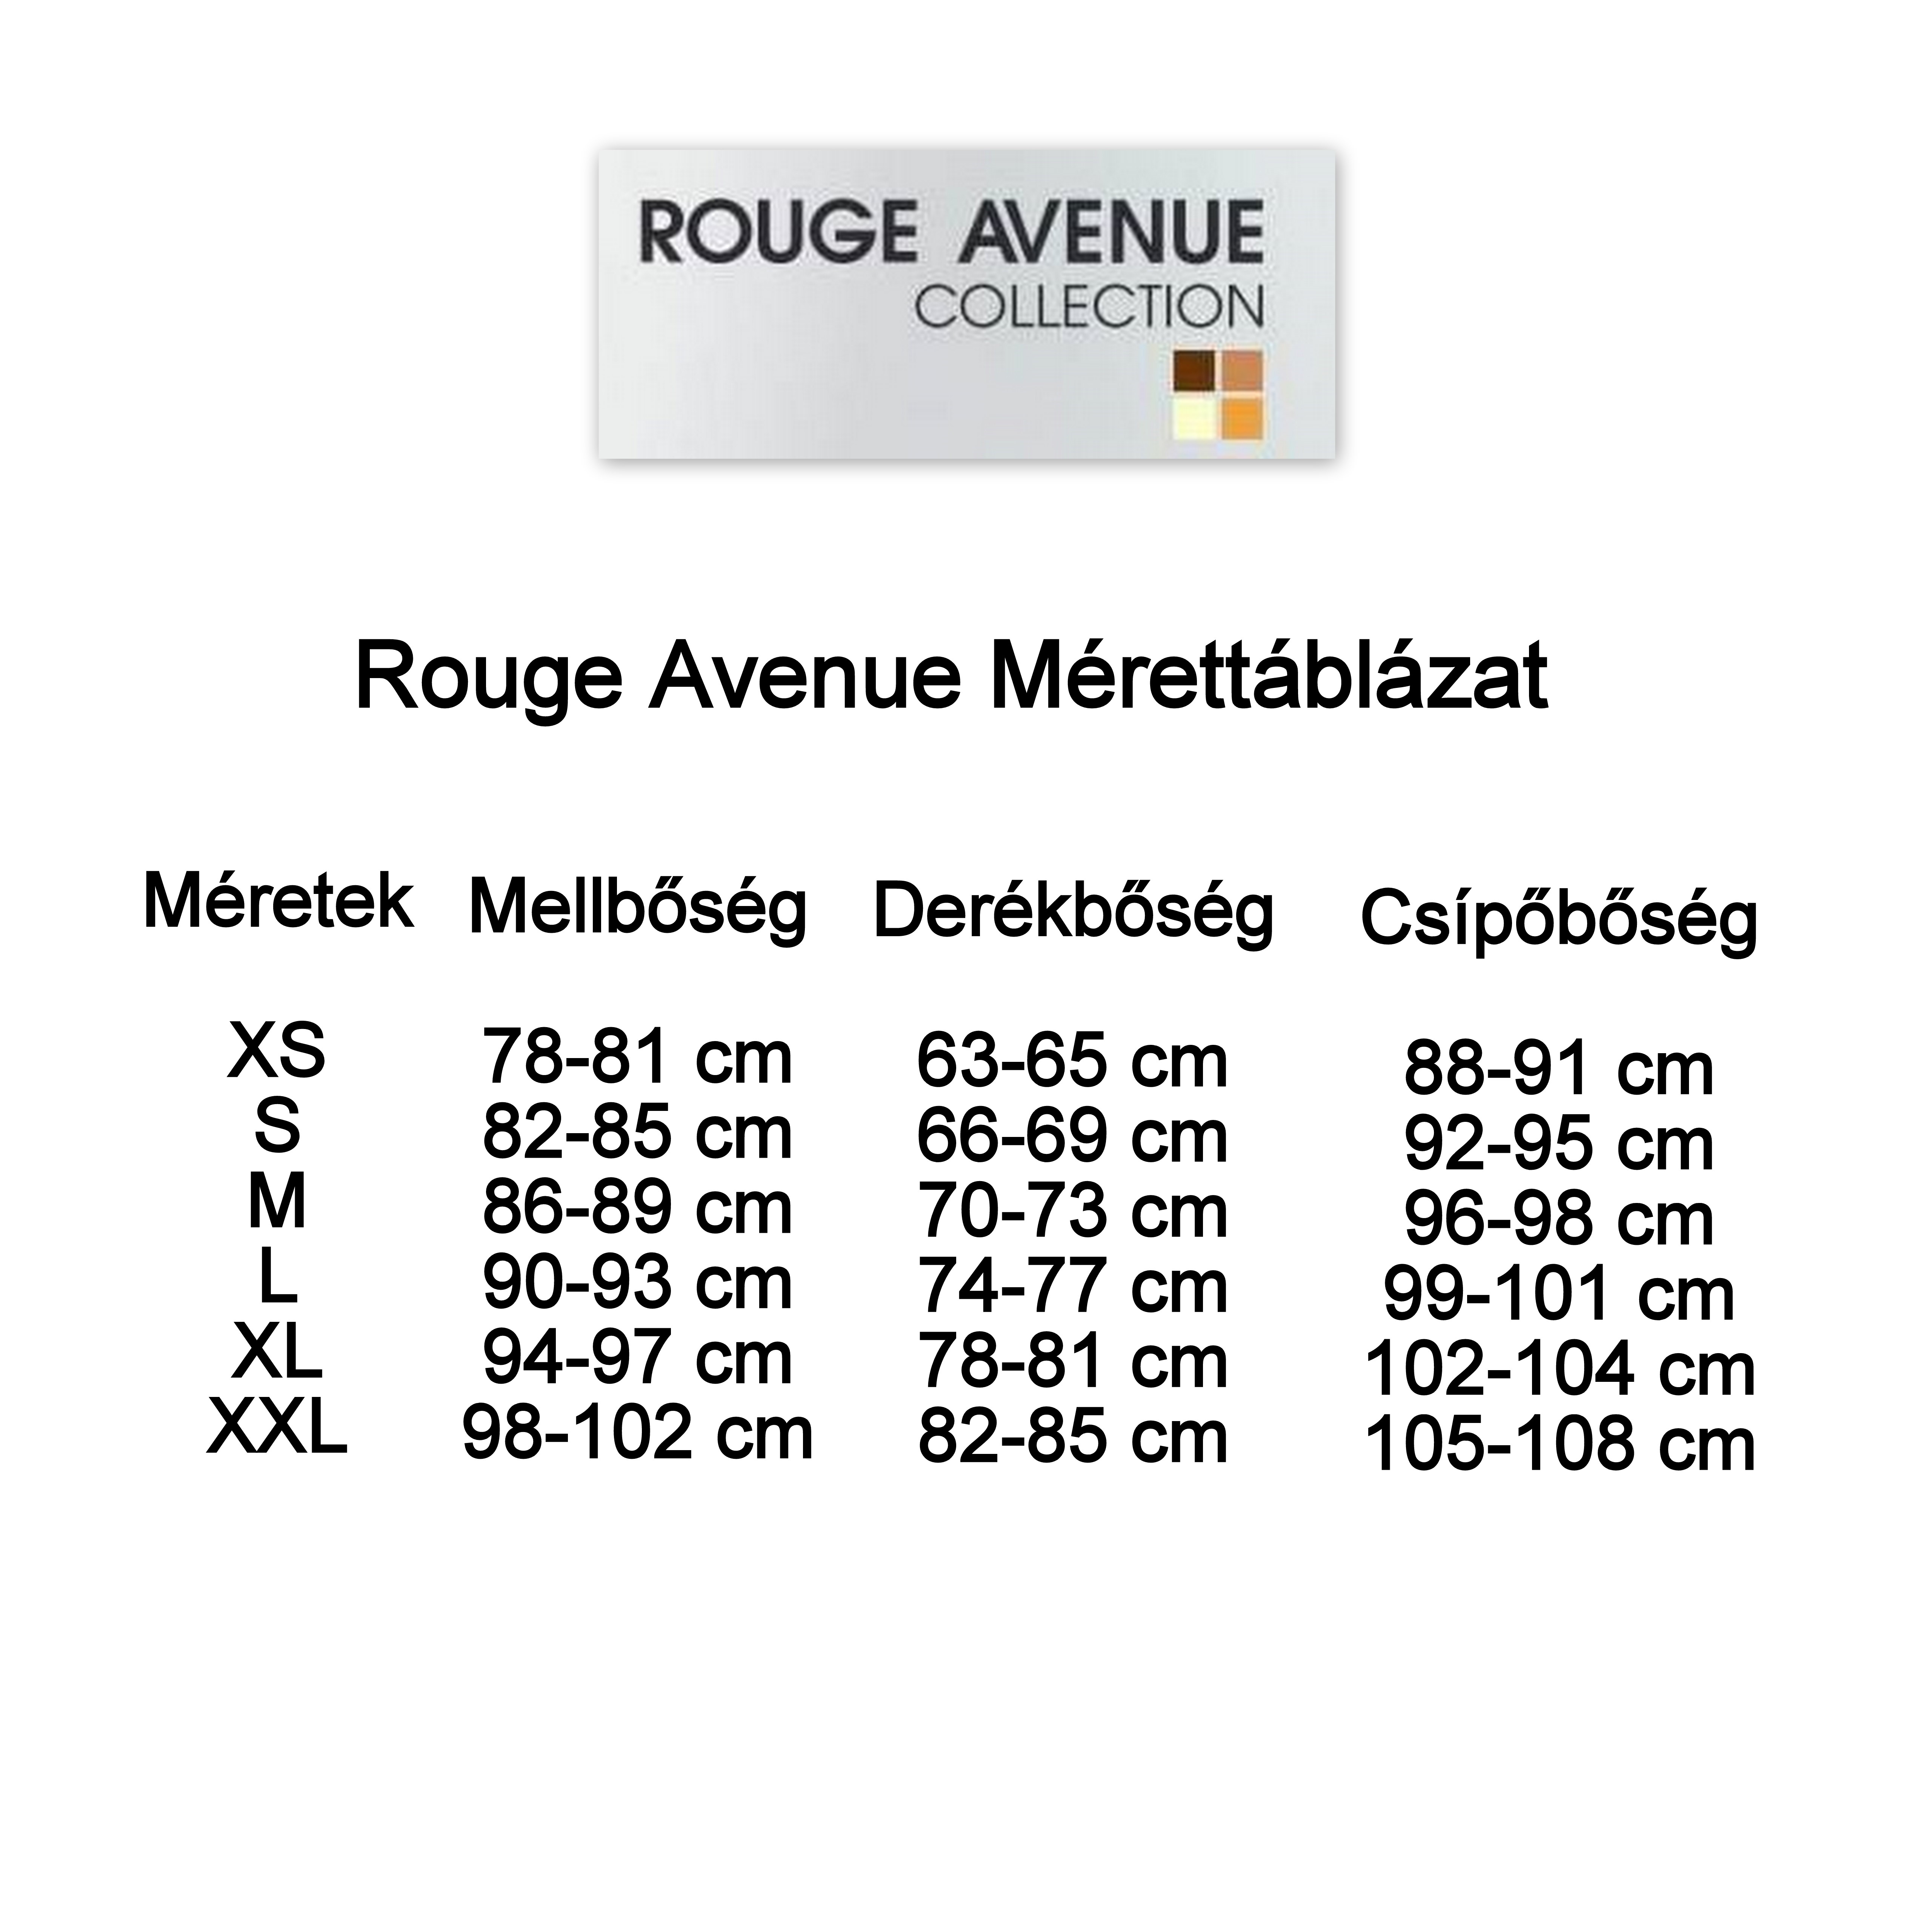 Rouge Avenue méretttáblázat